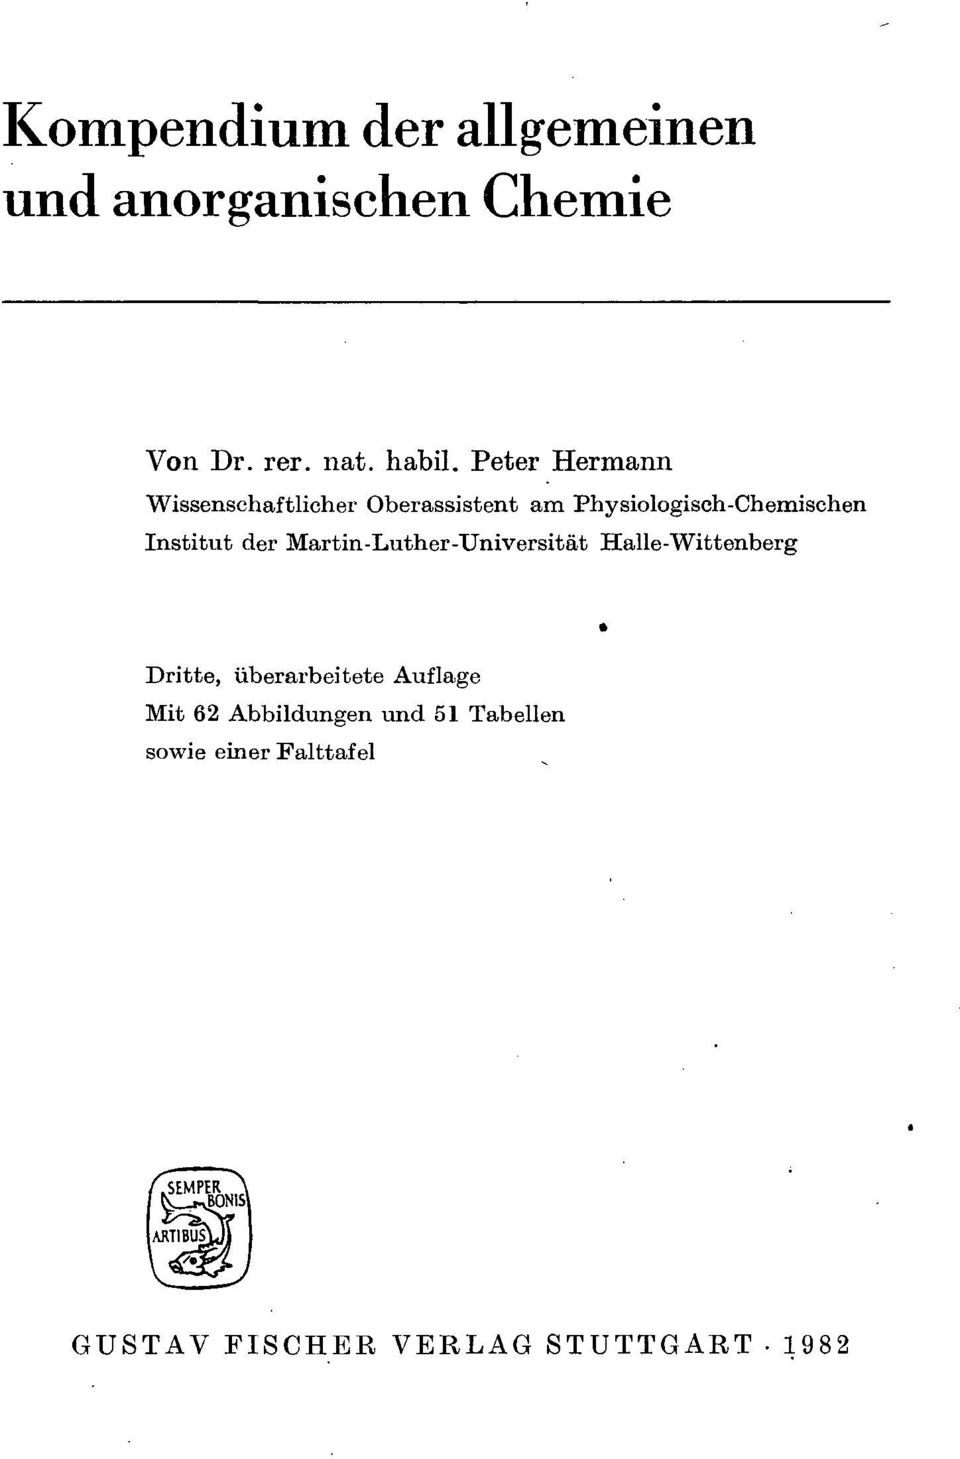 Institut der Martin-Luther-Universität Halle-Wittenberg Dritte, überarbeitete